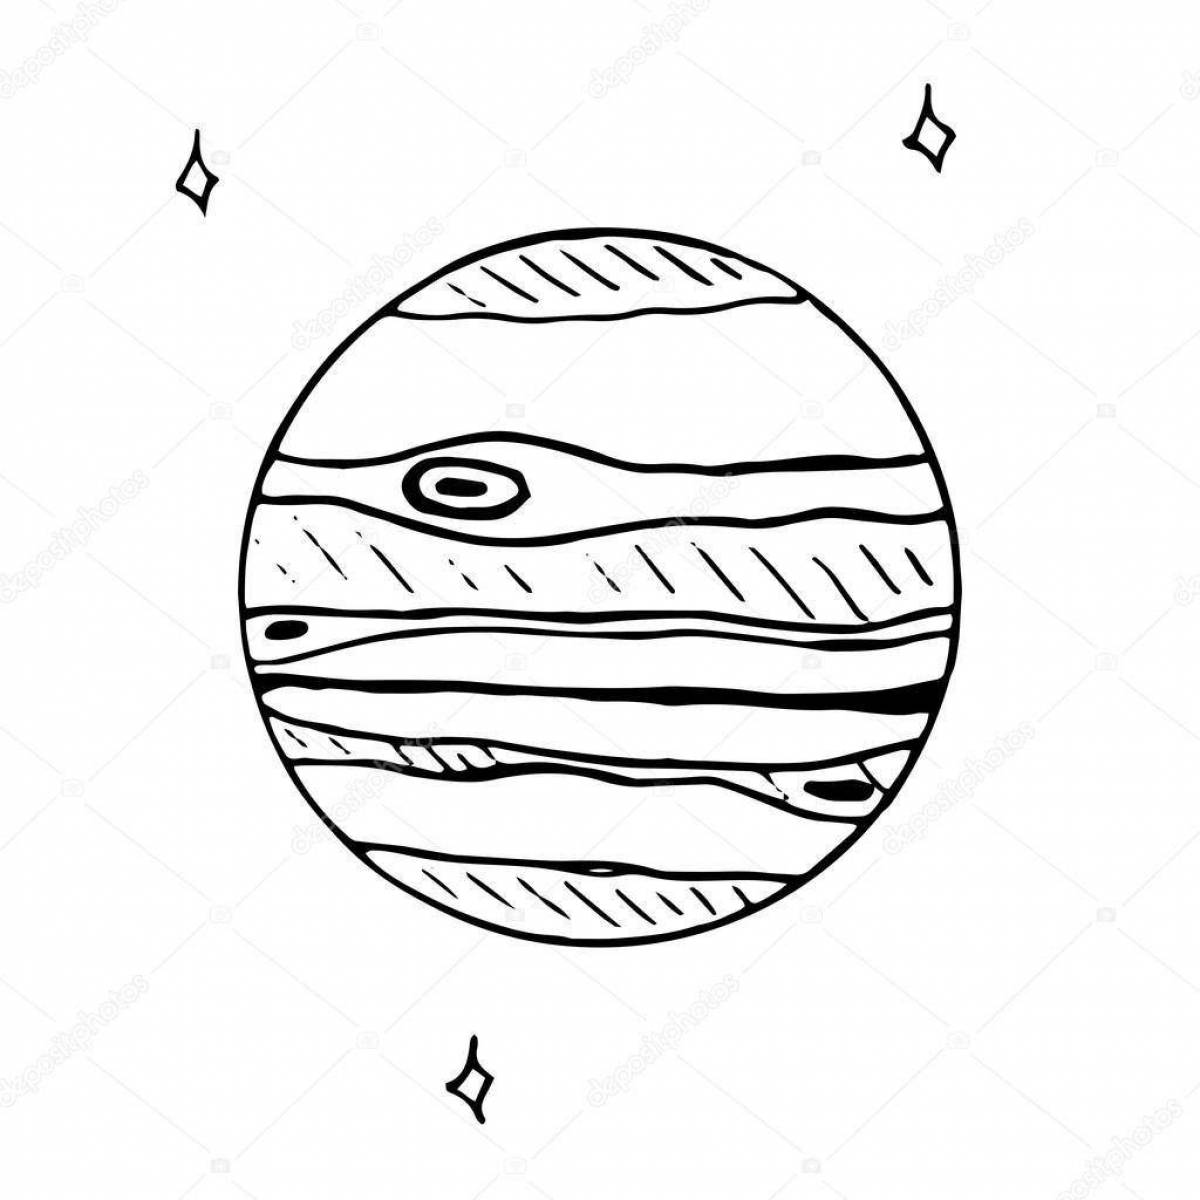 Изображение планеты Юпитер